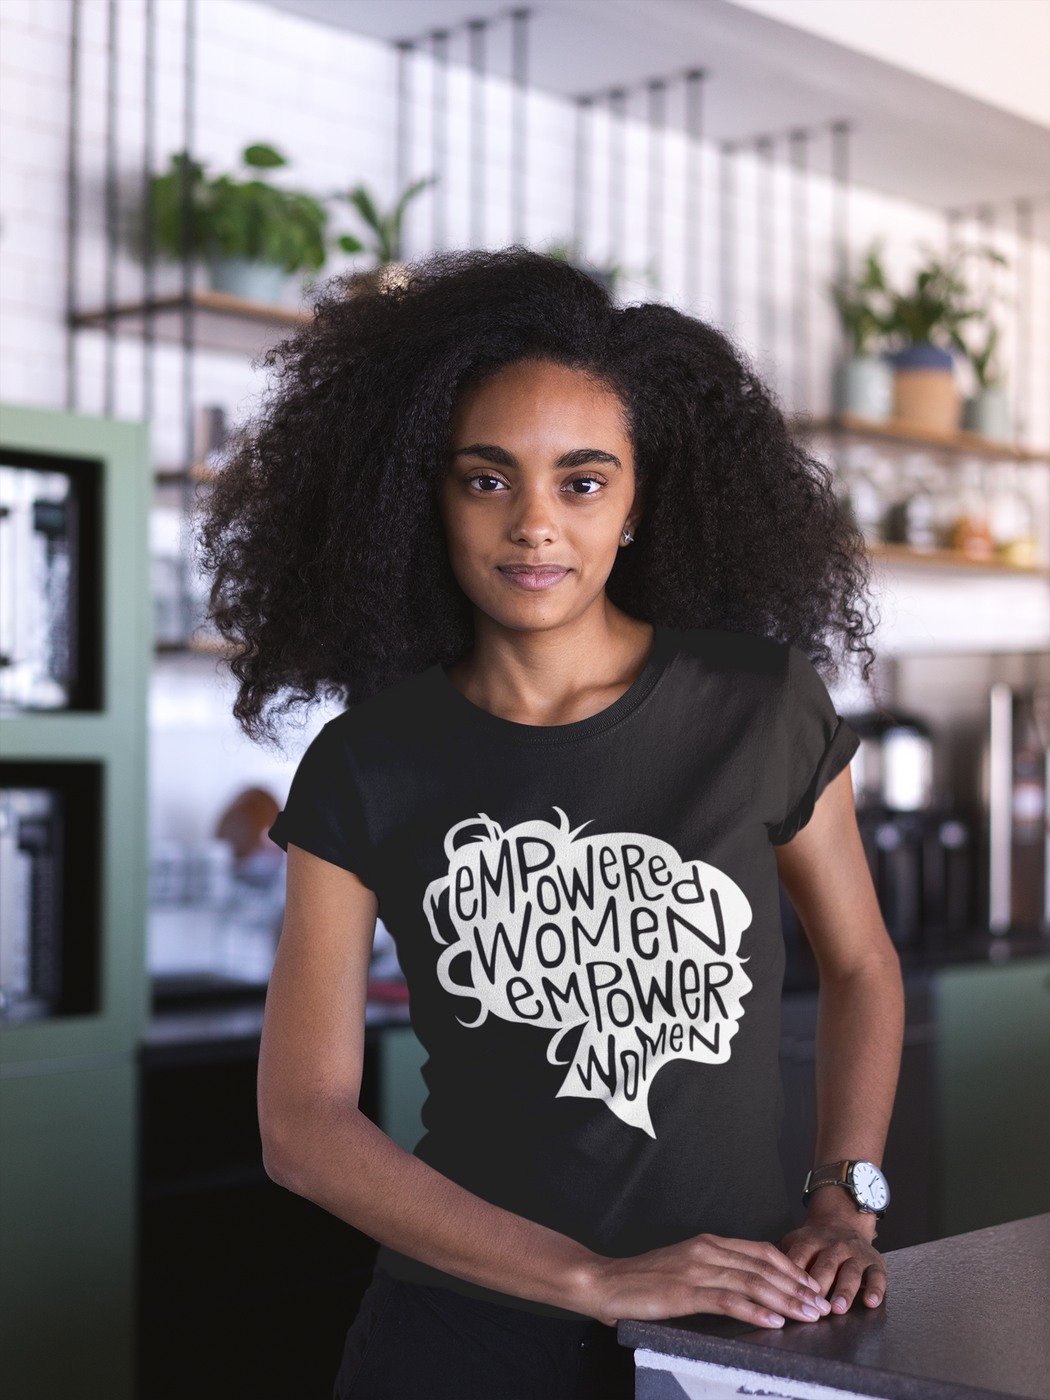 Empowered Women Empower Women -- Women's T-Shirt